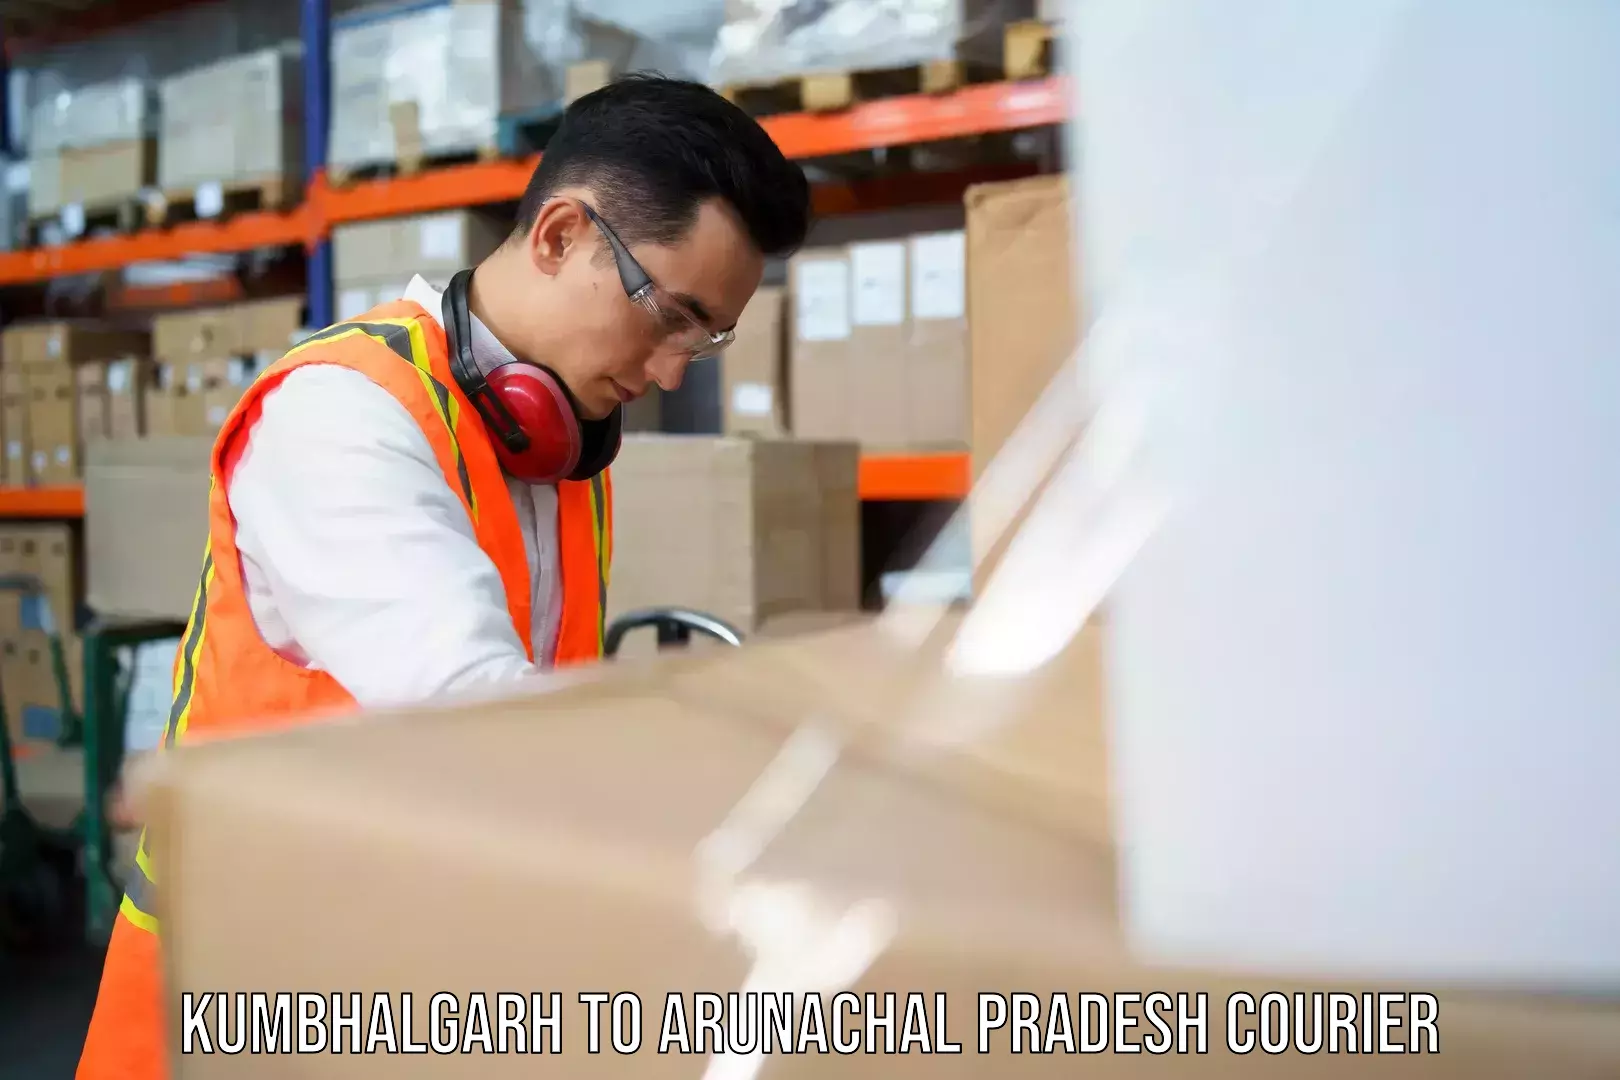 Efficient courier operations Kumbhalgarh to Arunachal Pradesh